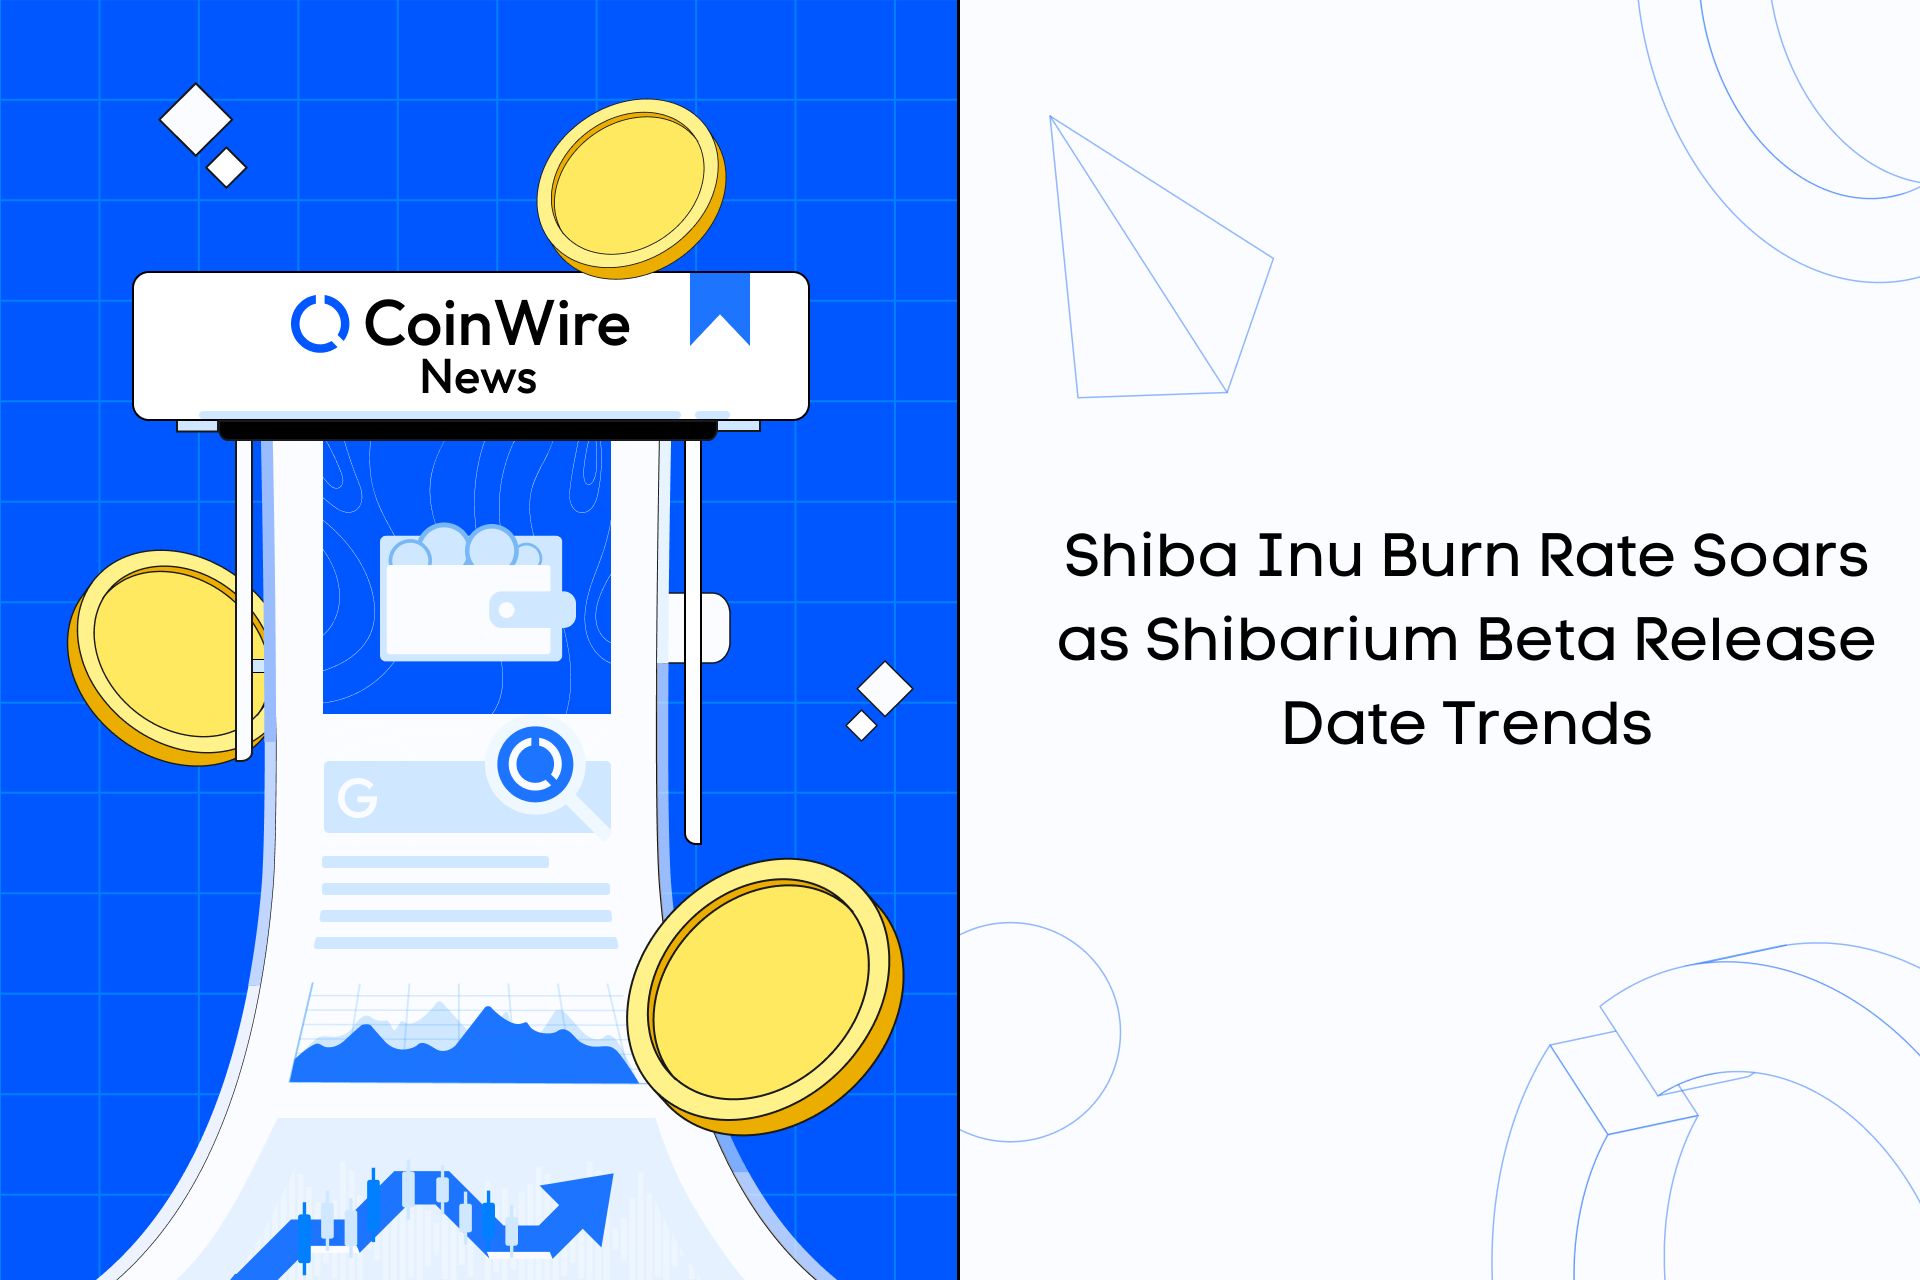 Shiba Inu Burn Rate Soars As Shibarium Beta Release Date Trends